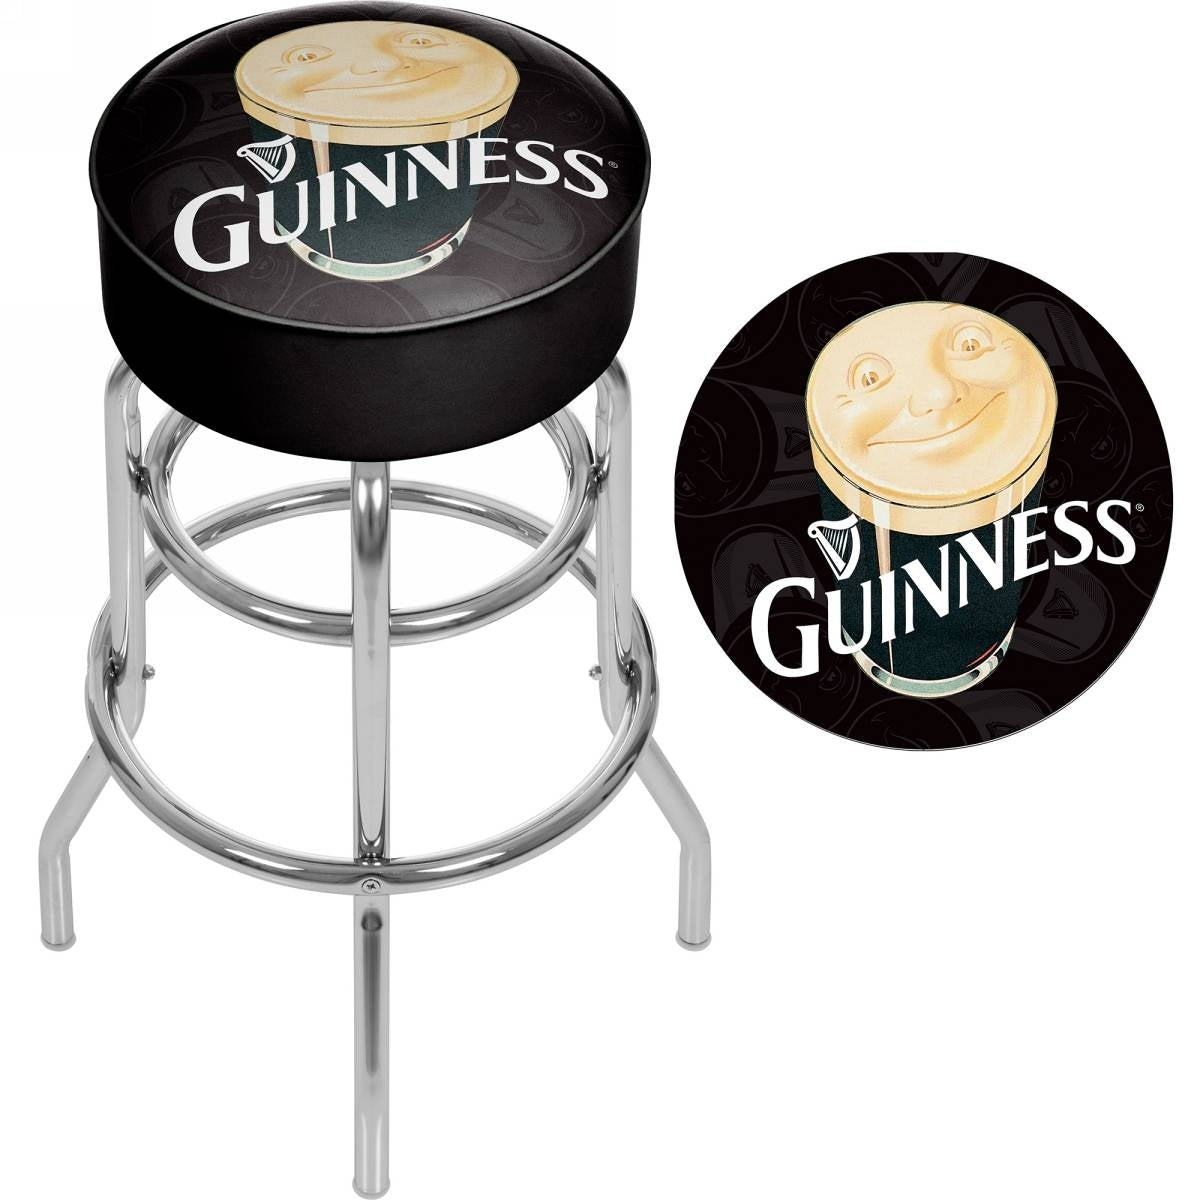 Guinness Padded Swivel Bar Stool - Smiling Pint